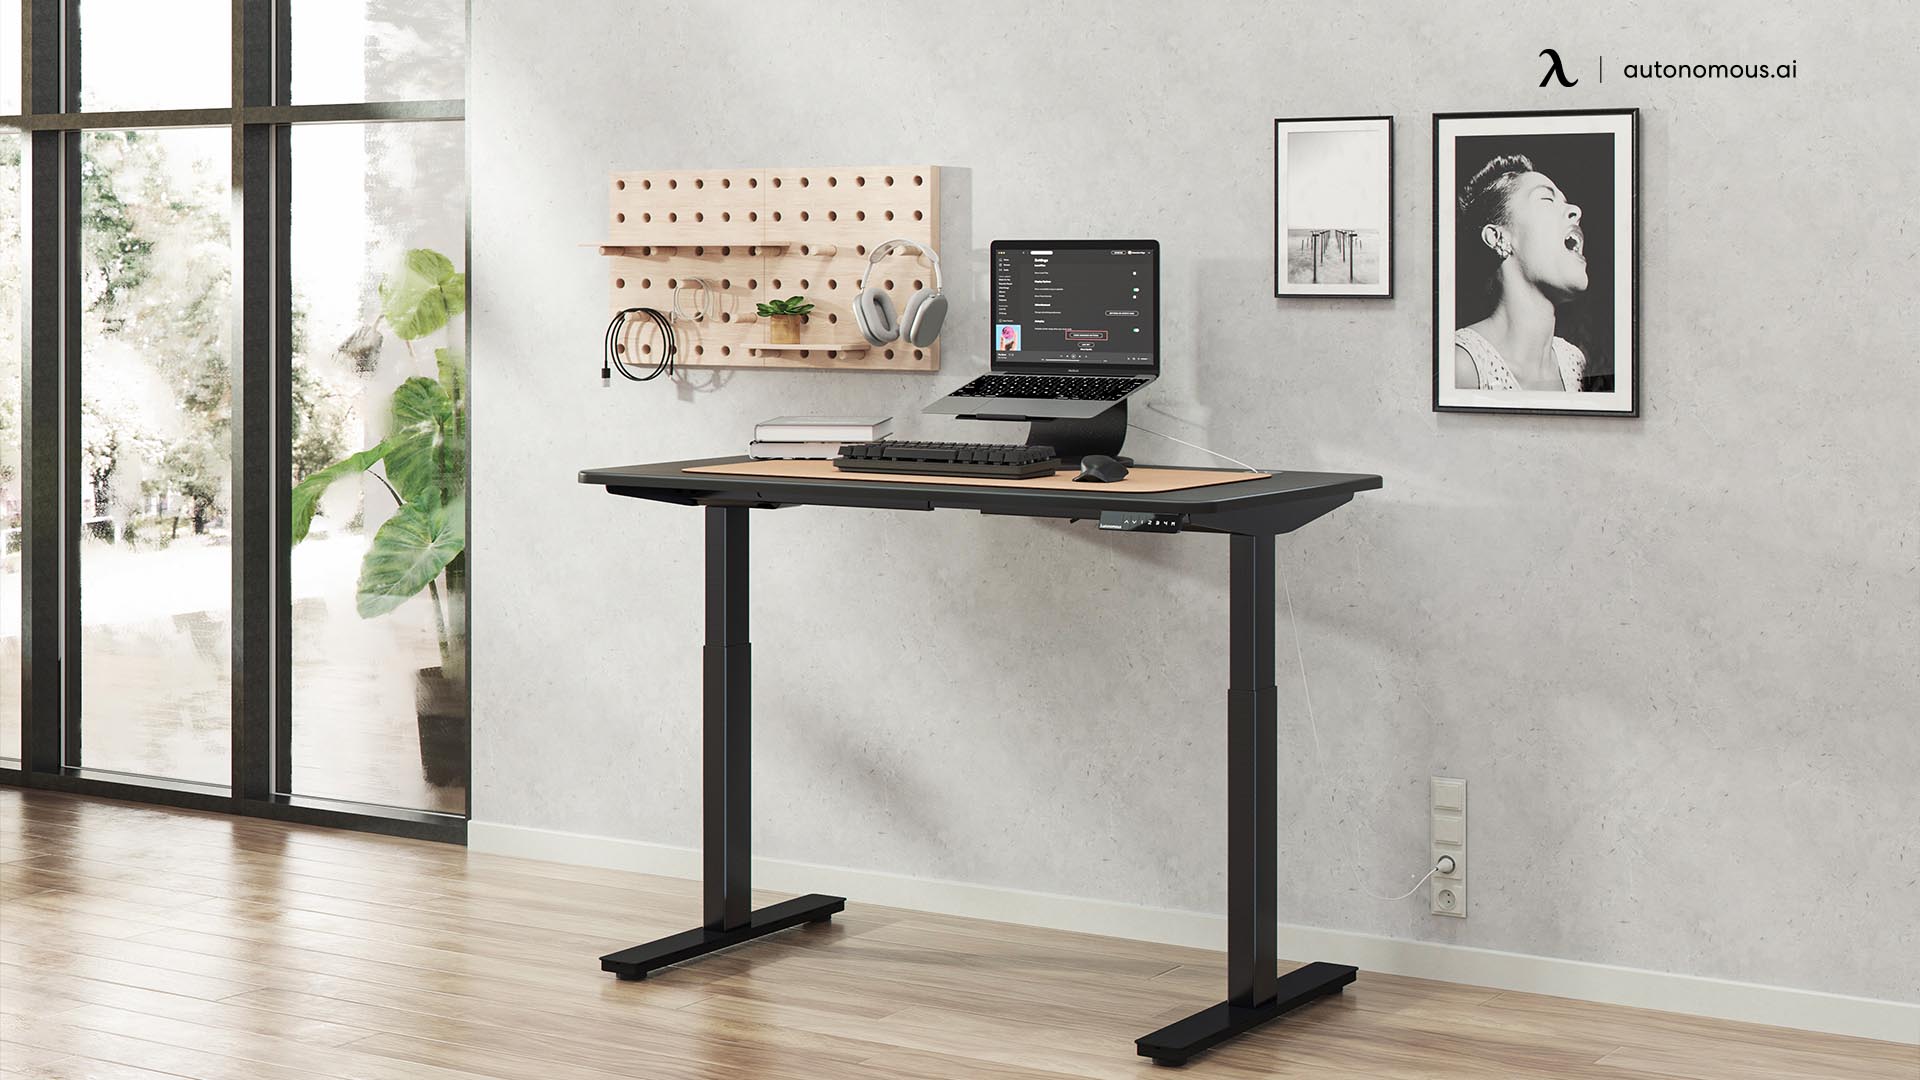 Autonomous standing desk designs